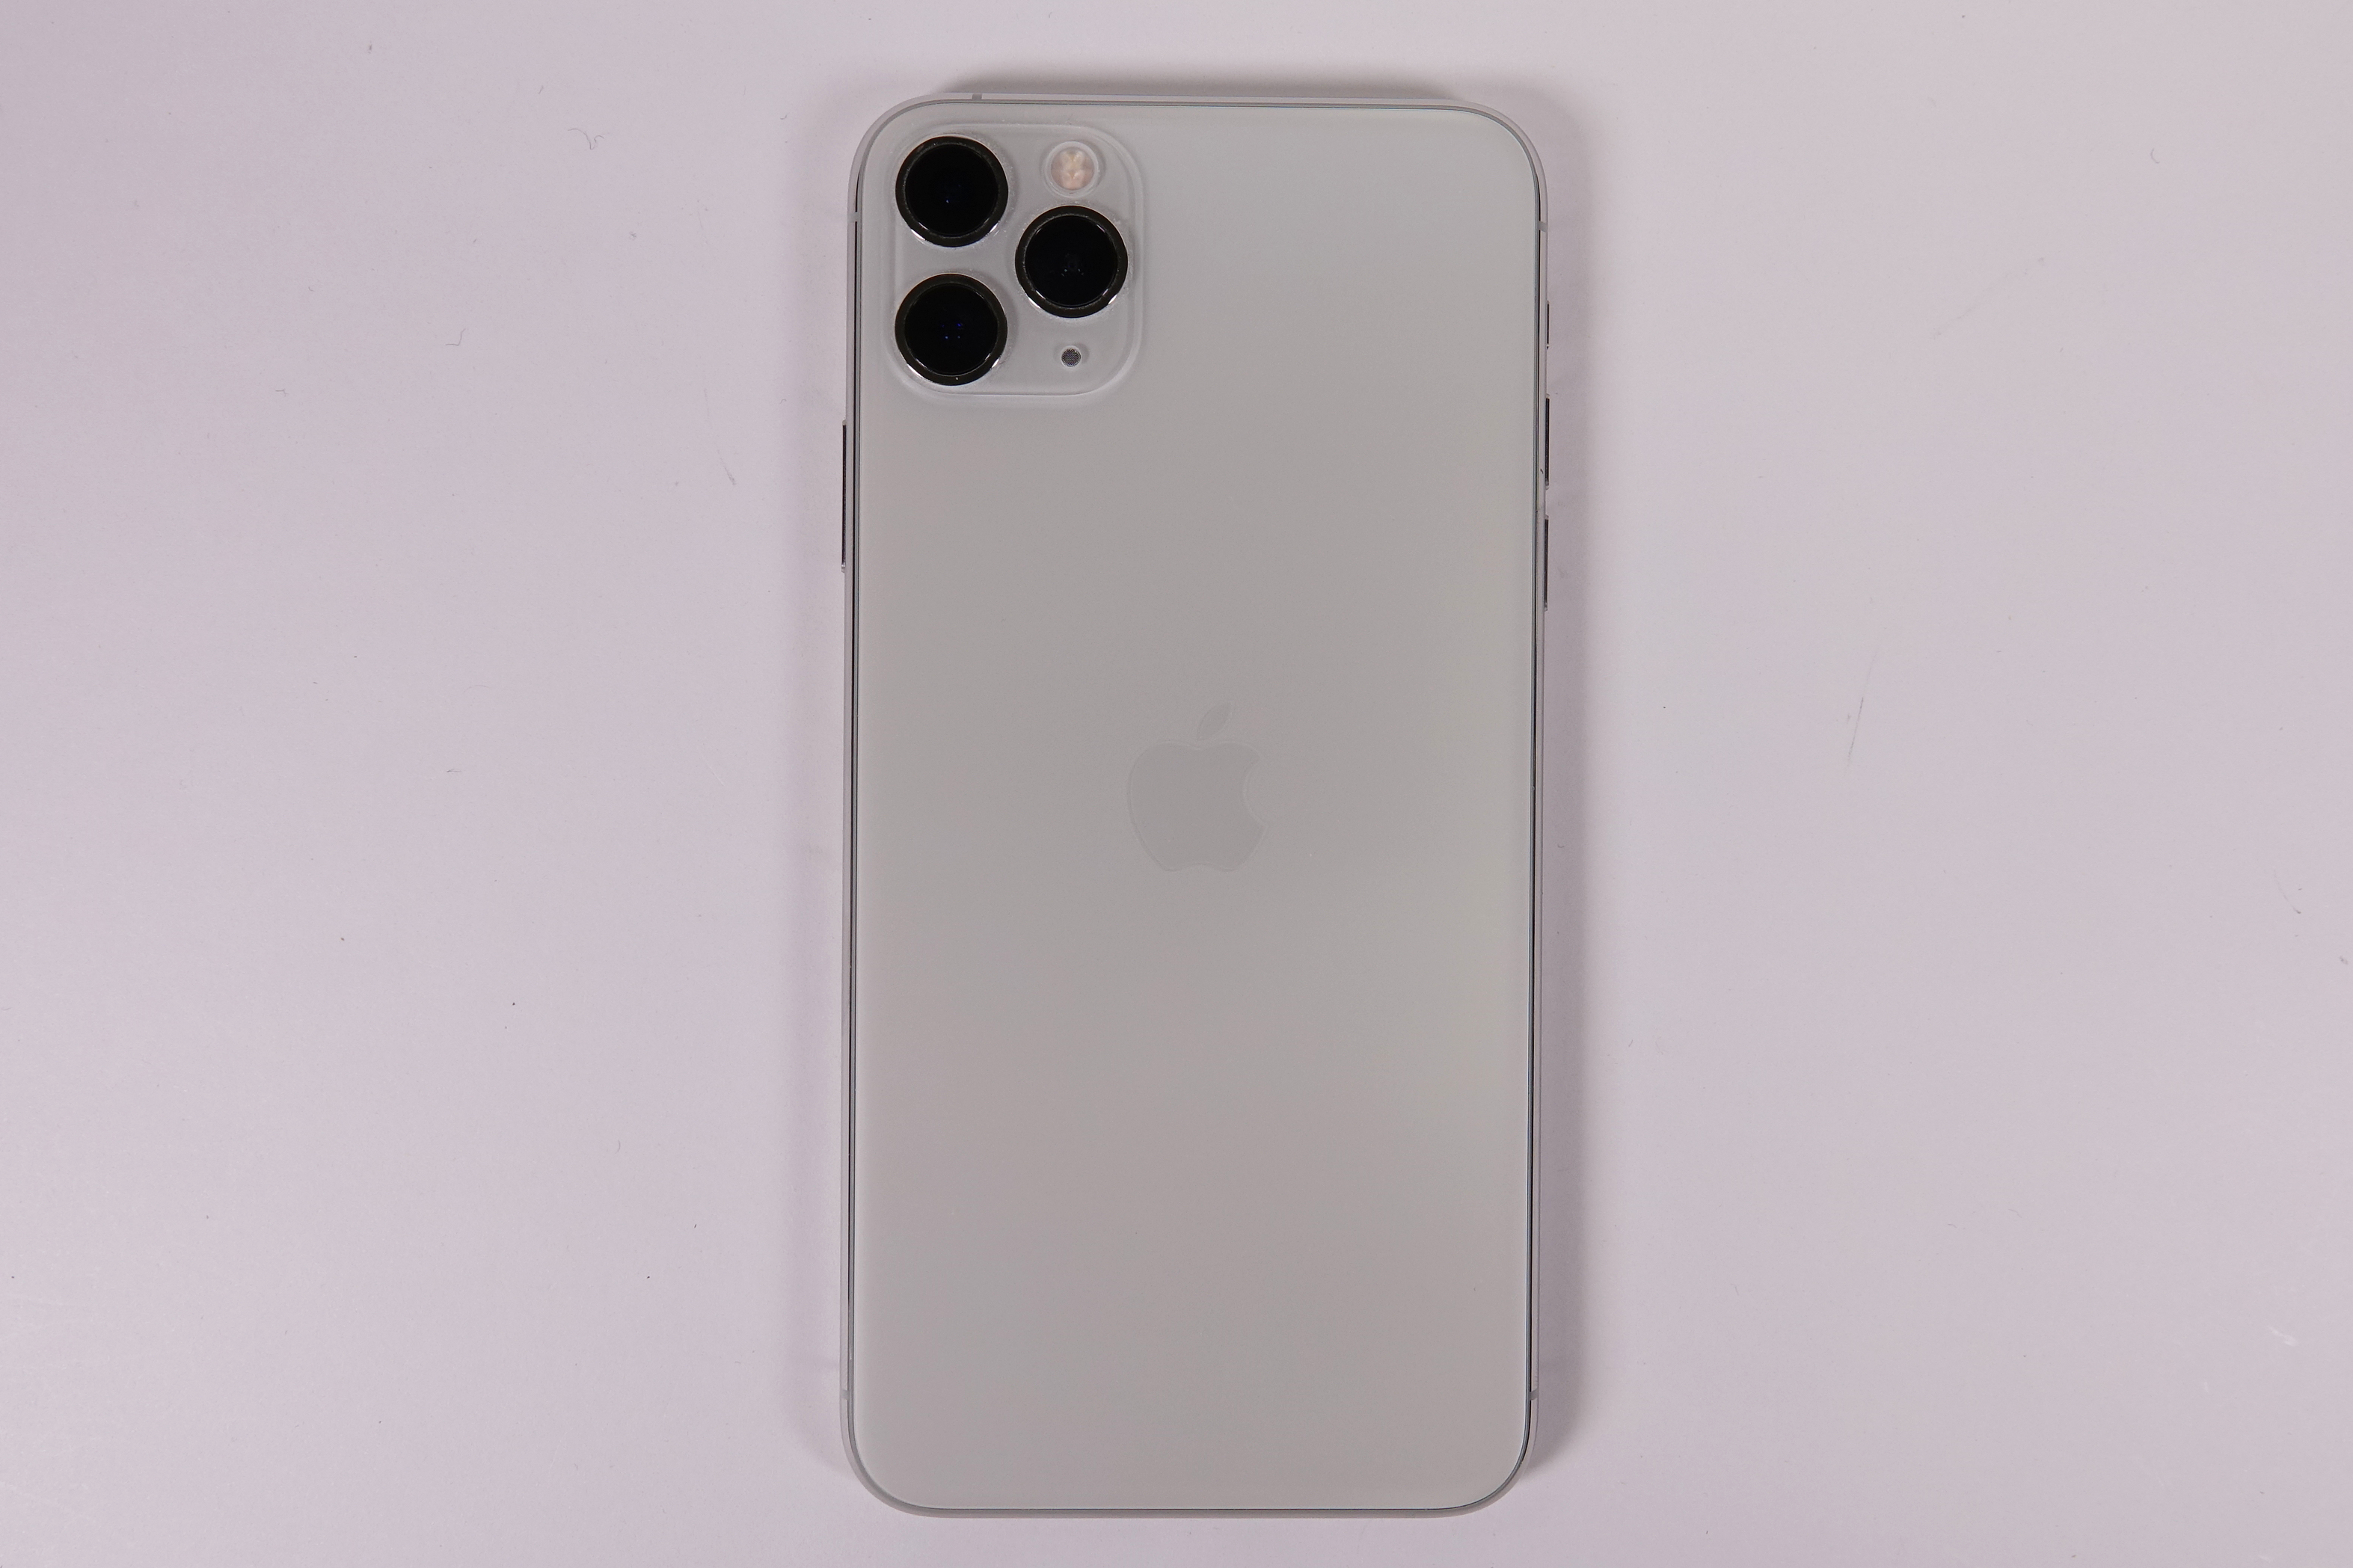 新機種まとめ] iPhone 11 Pro Max 2019年9月20日発売 - ケータイ Watch